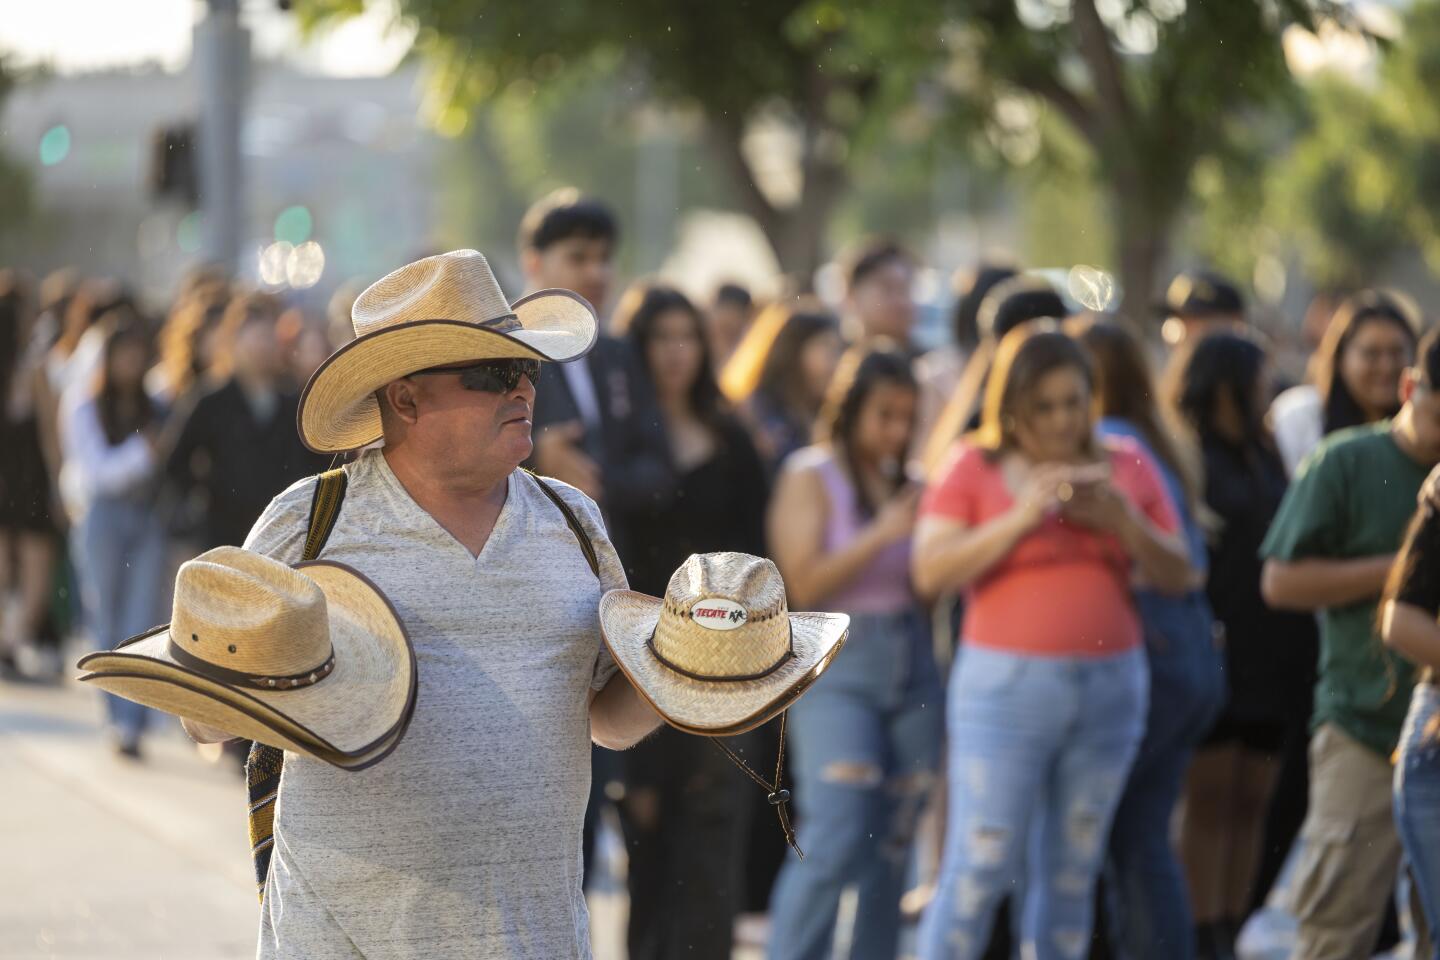 Sombrero Cowboy Ela - Ocho